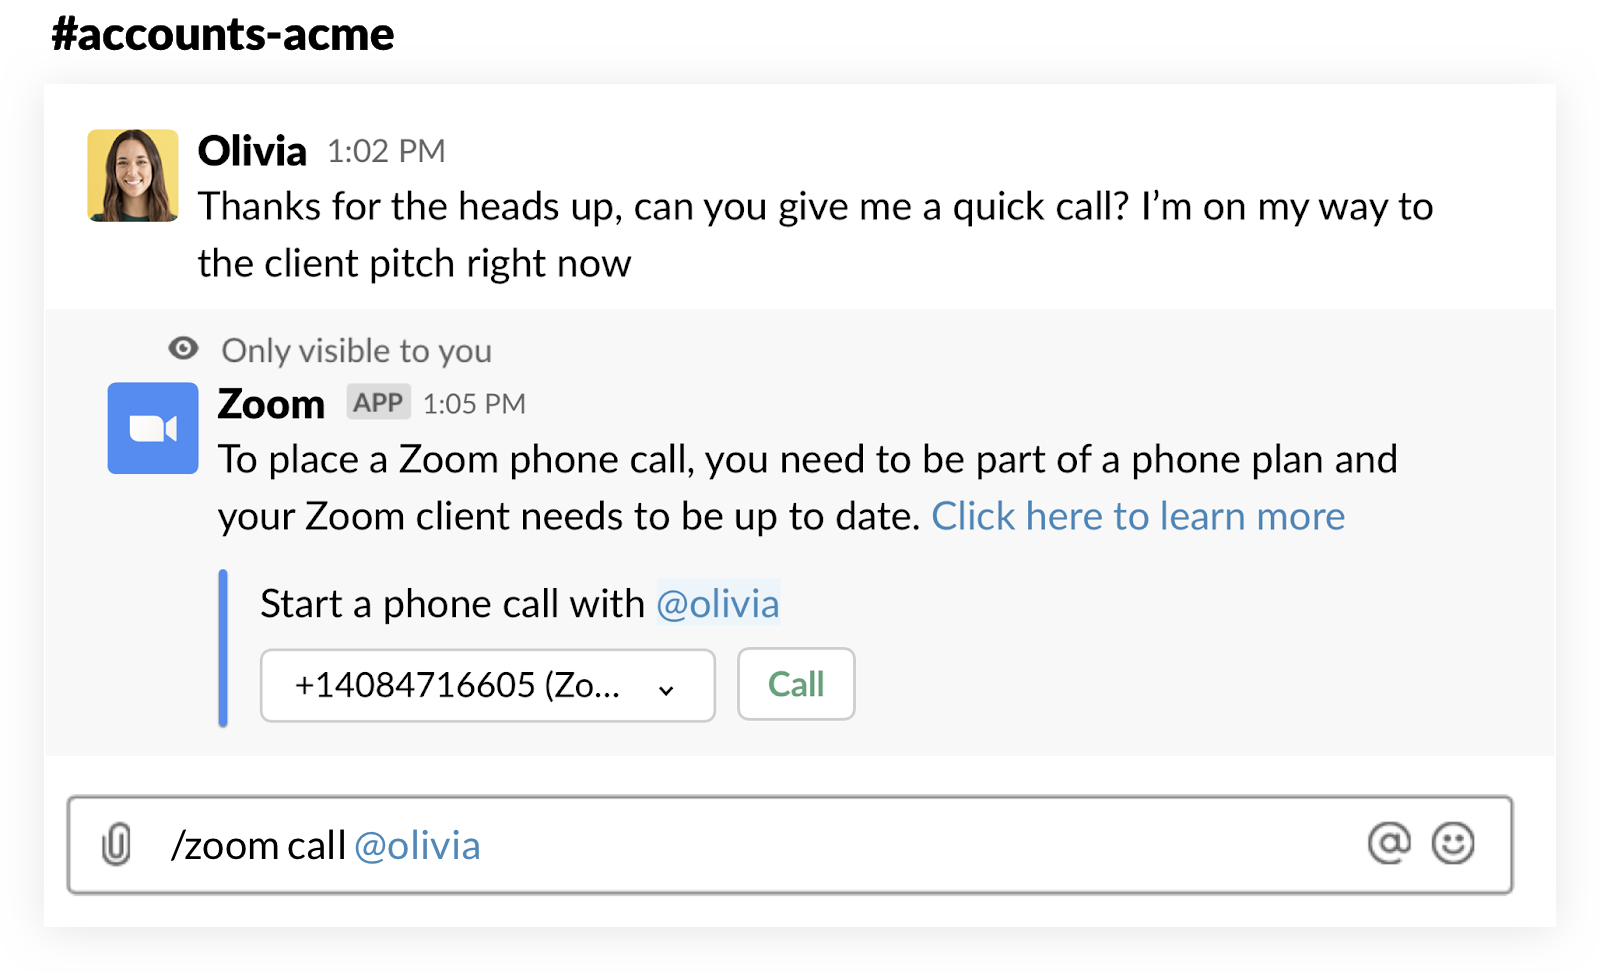 Inviando il messaggio in un canale puoi effettuare una chiamata Zoom al telefono di un membro della tua area di lavoro direttamente tramite Slack